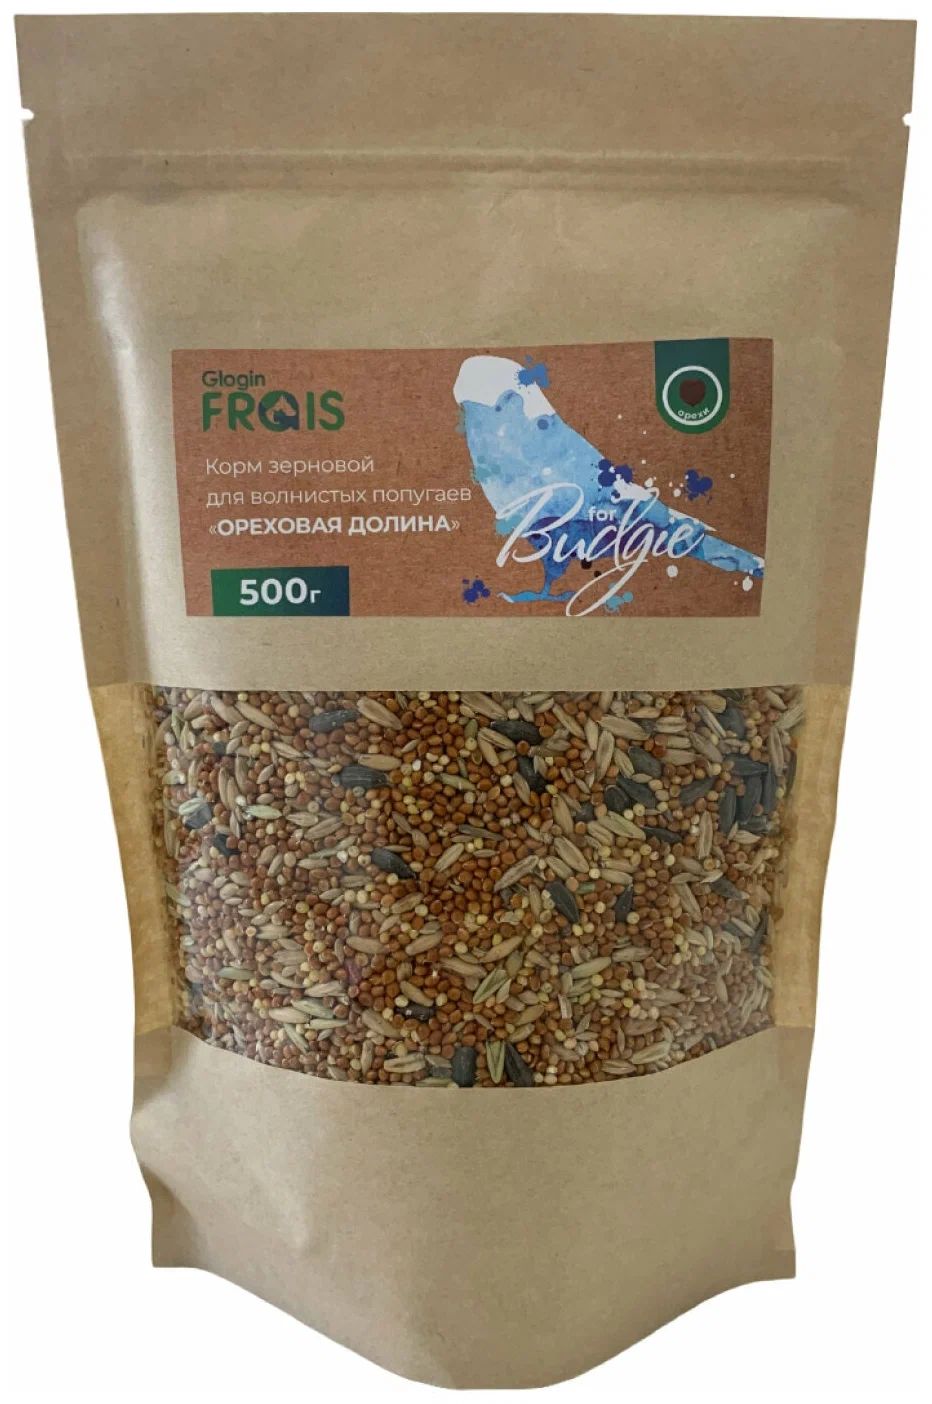 Корм Glogin Frais для волнистых попугаев, зерновой, ореховая долина, 500 г